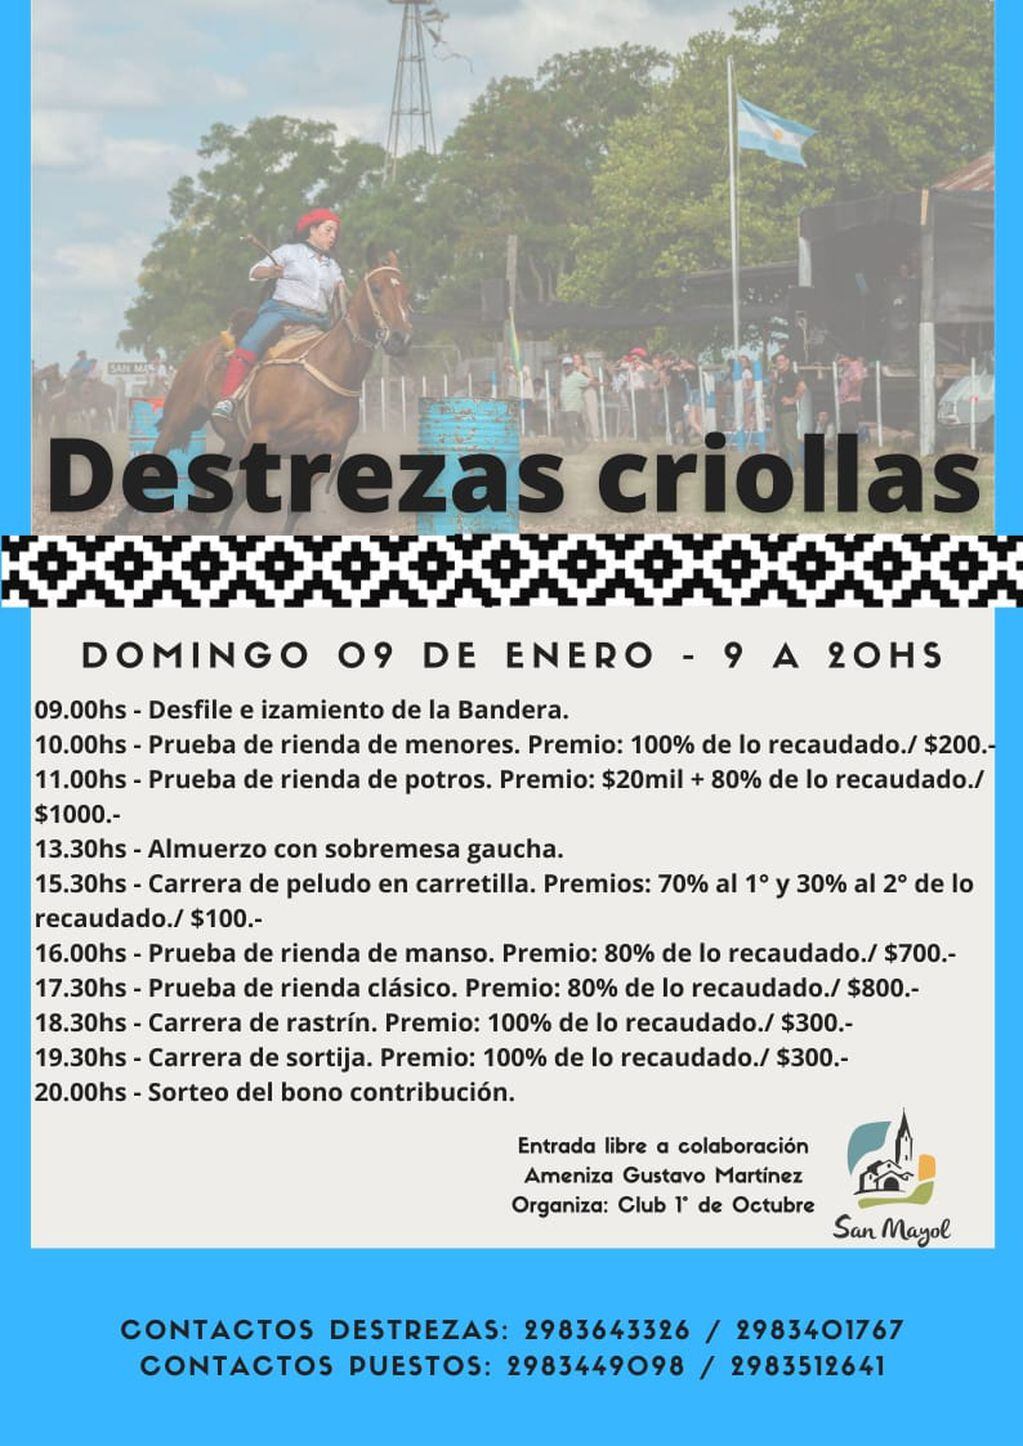 Festival de Destrezas Criollas en San Mayol